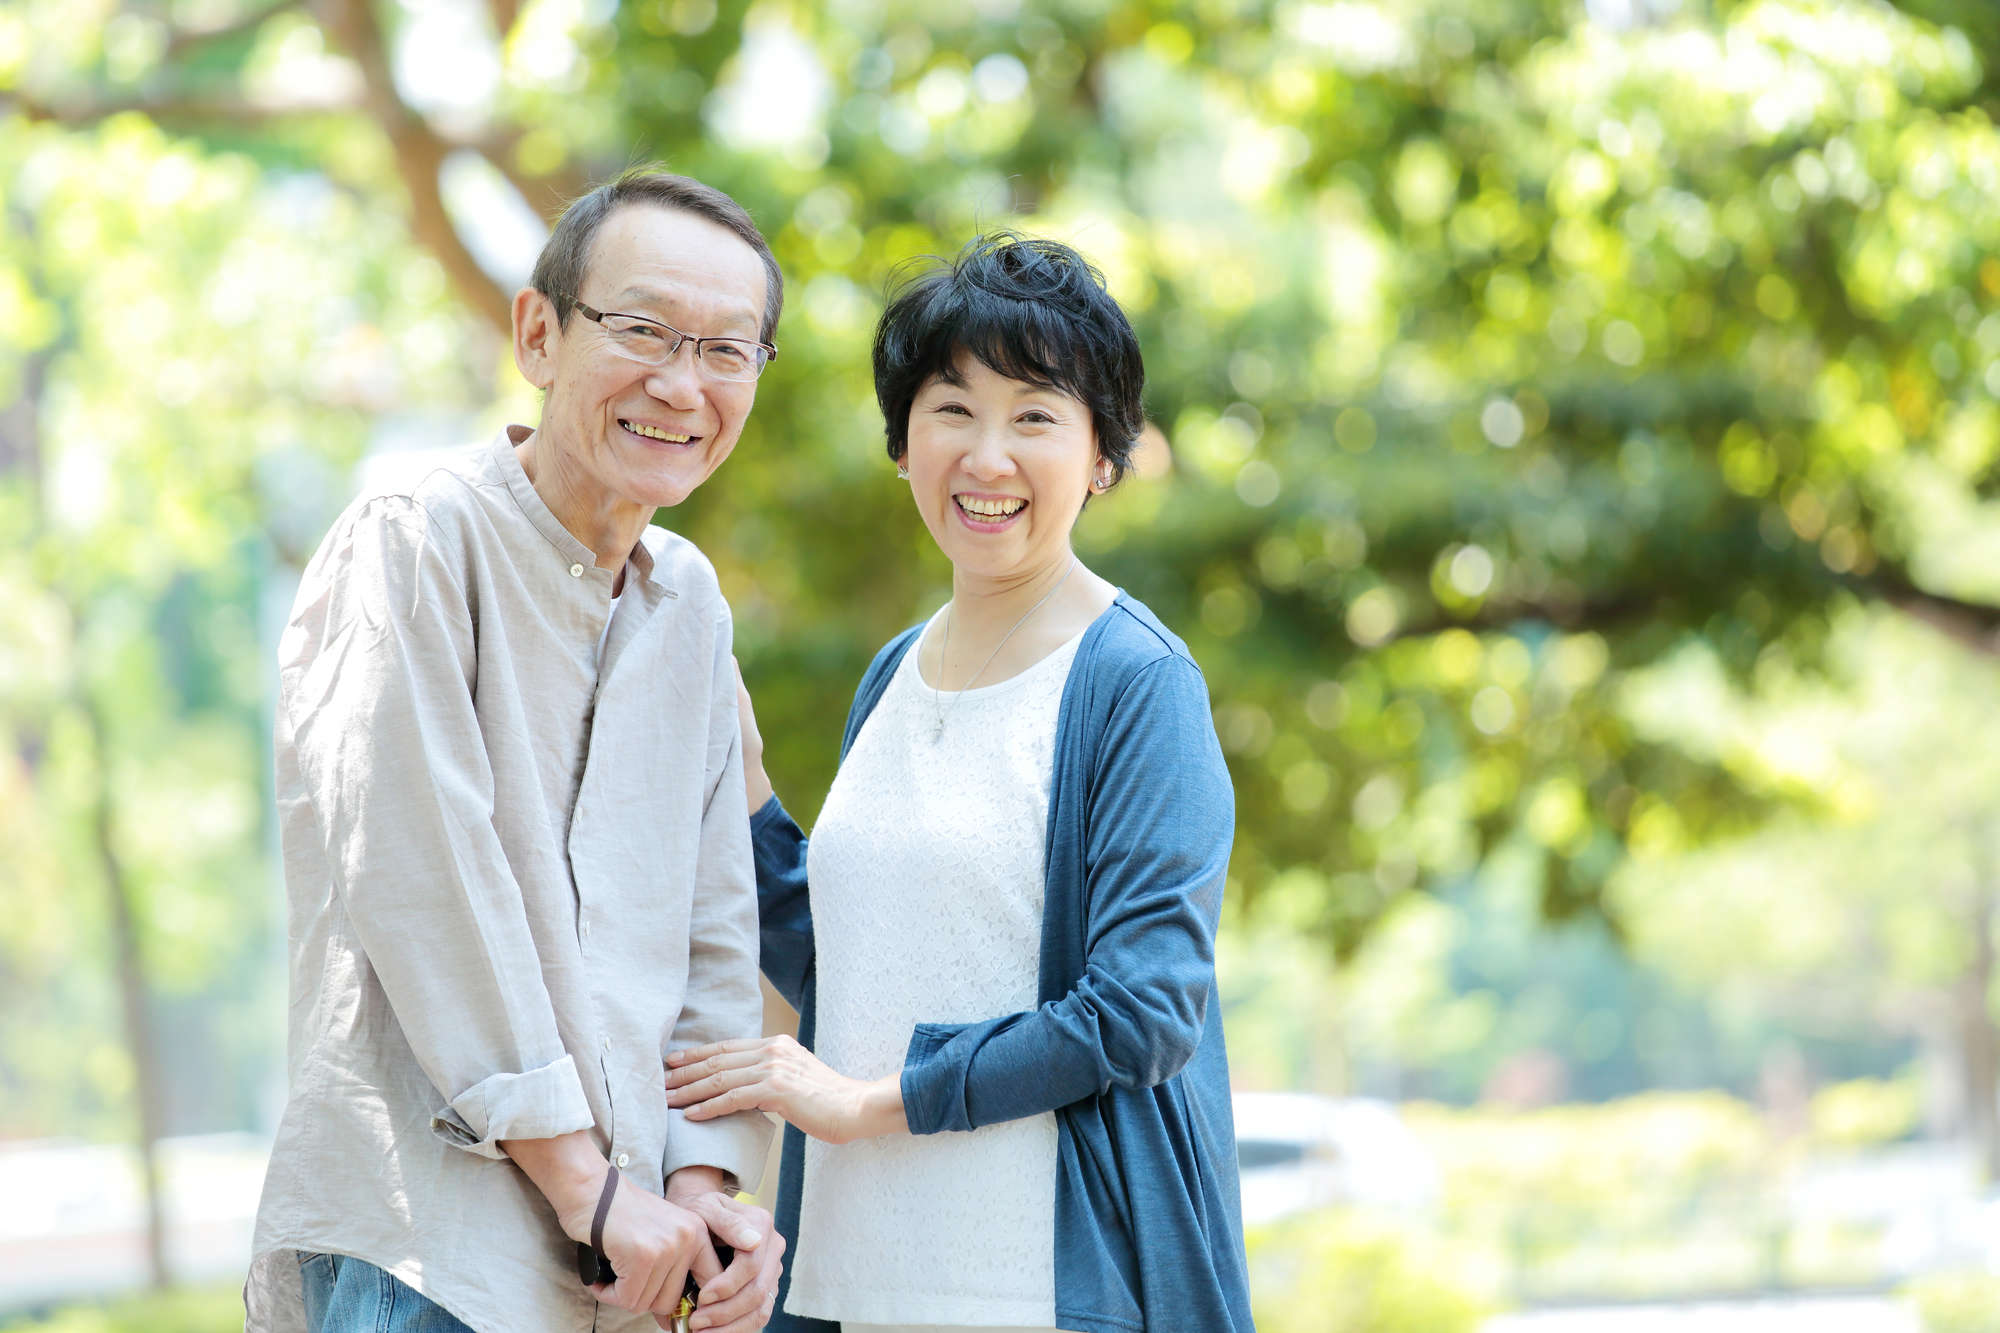 日本人は老後の生活を心配しすぎ？ さまざまな不安に「楽観的」に向き合った方がよい理由